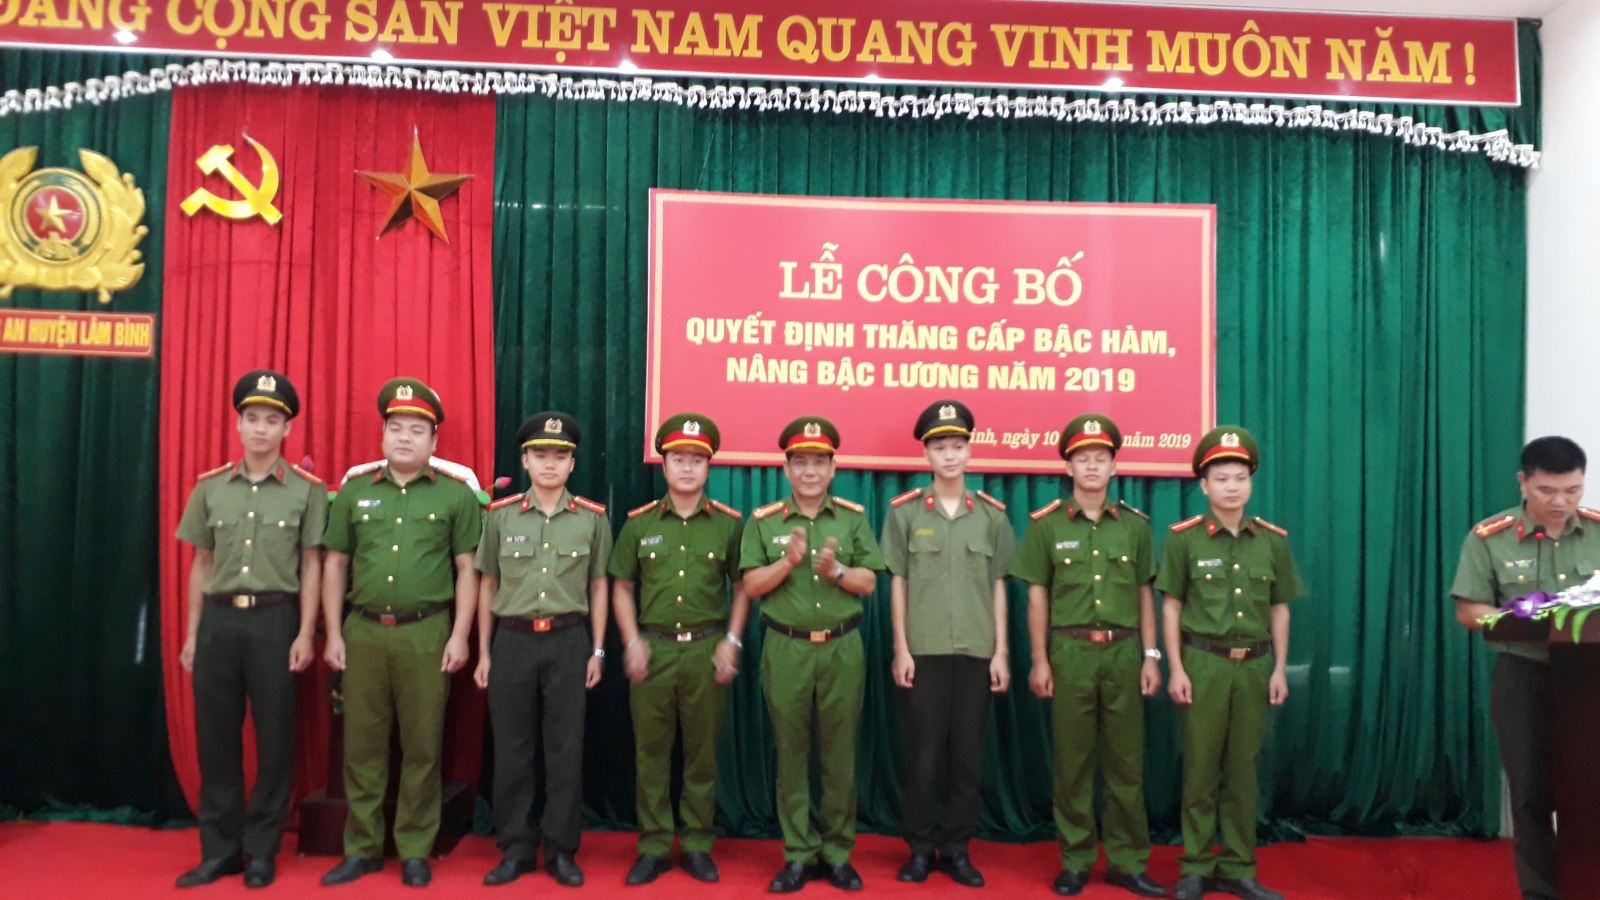 Công an huyện Lâm Bình công bố quyết định thăng cấp bậc hàm năm 2019